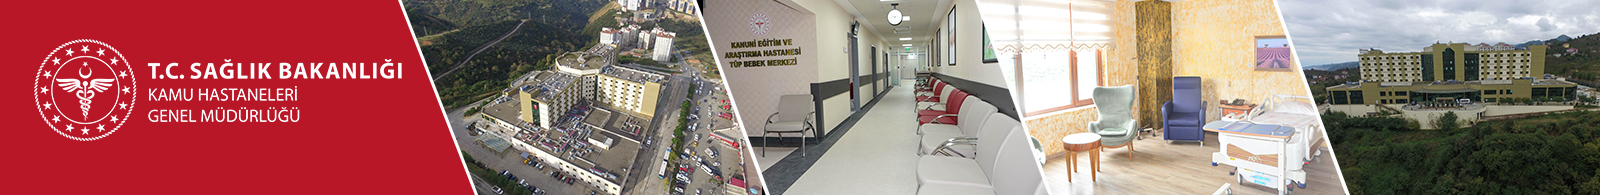 Trabzon Kanuni Eğitim ve Araştırma Hastanesi.jpg